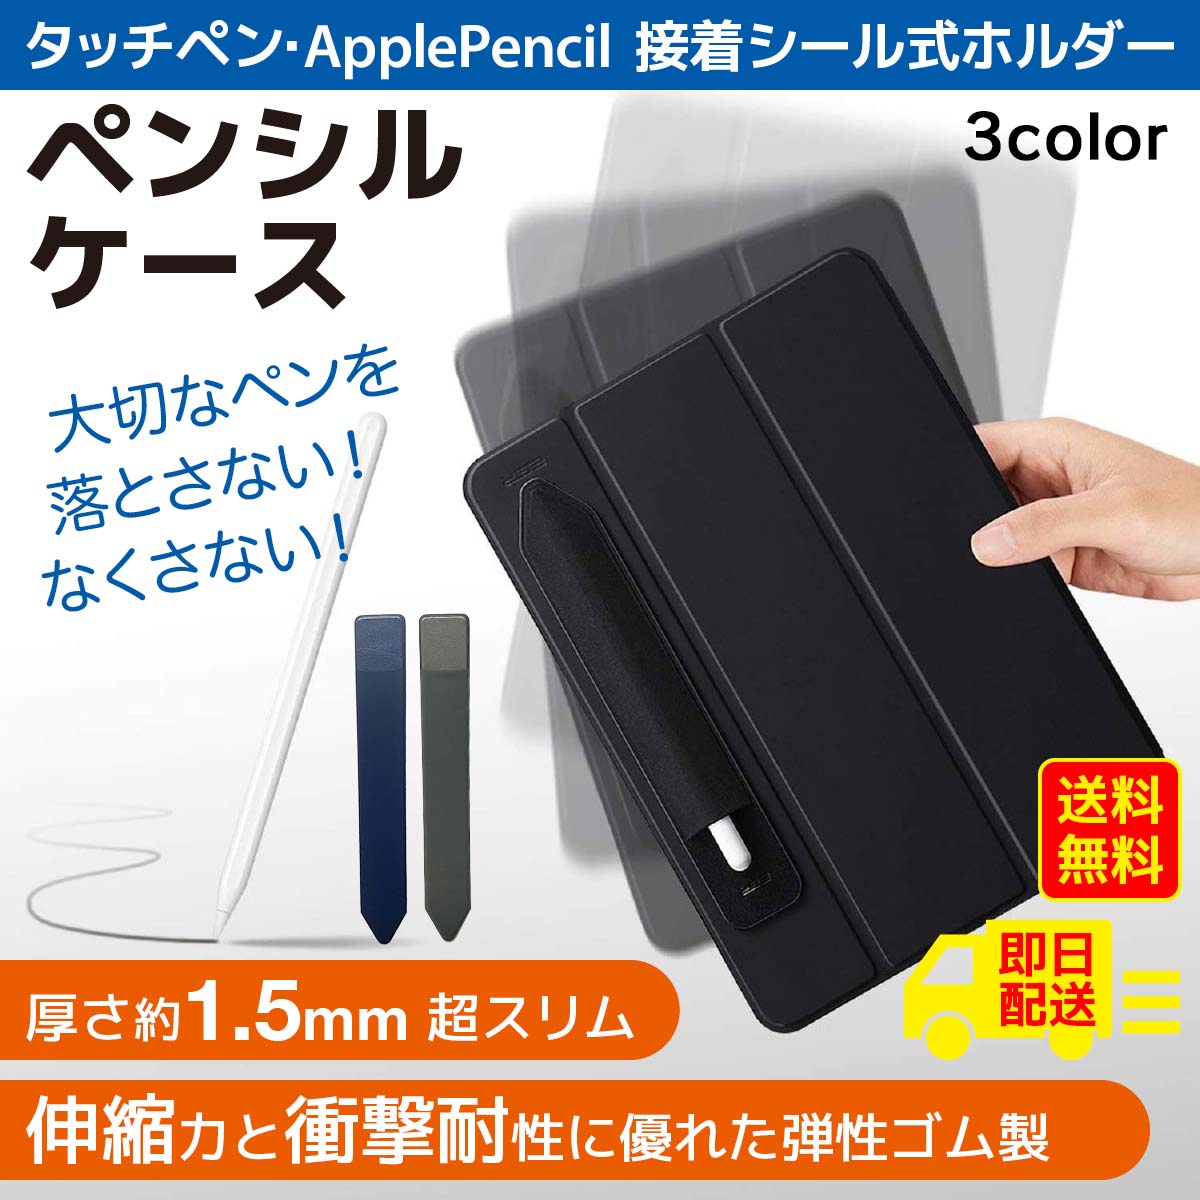 Apple Pencil 第2世代 タッチペン アップルペンシル+aldersgatelinc.org